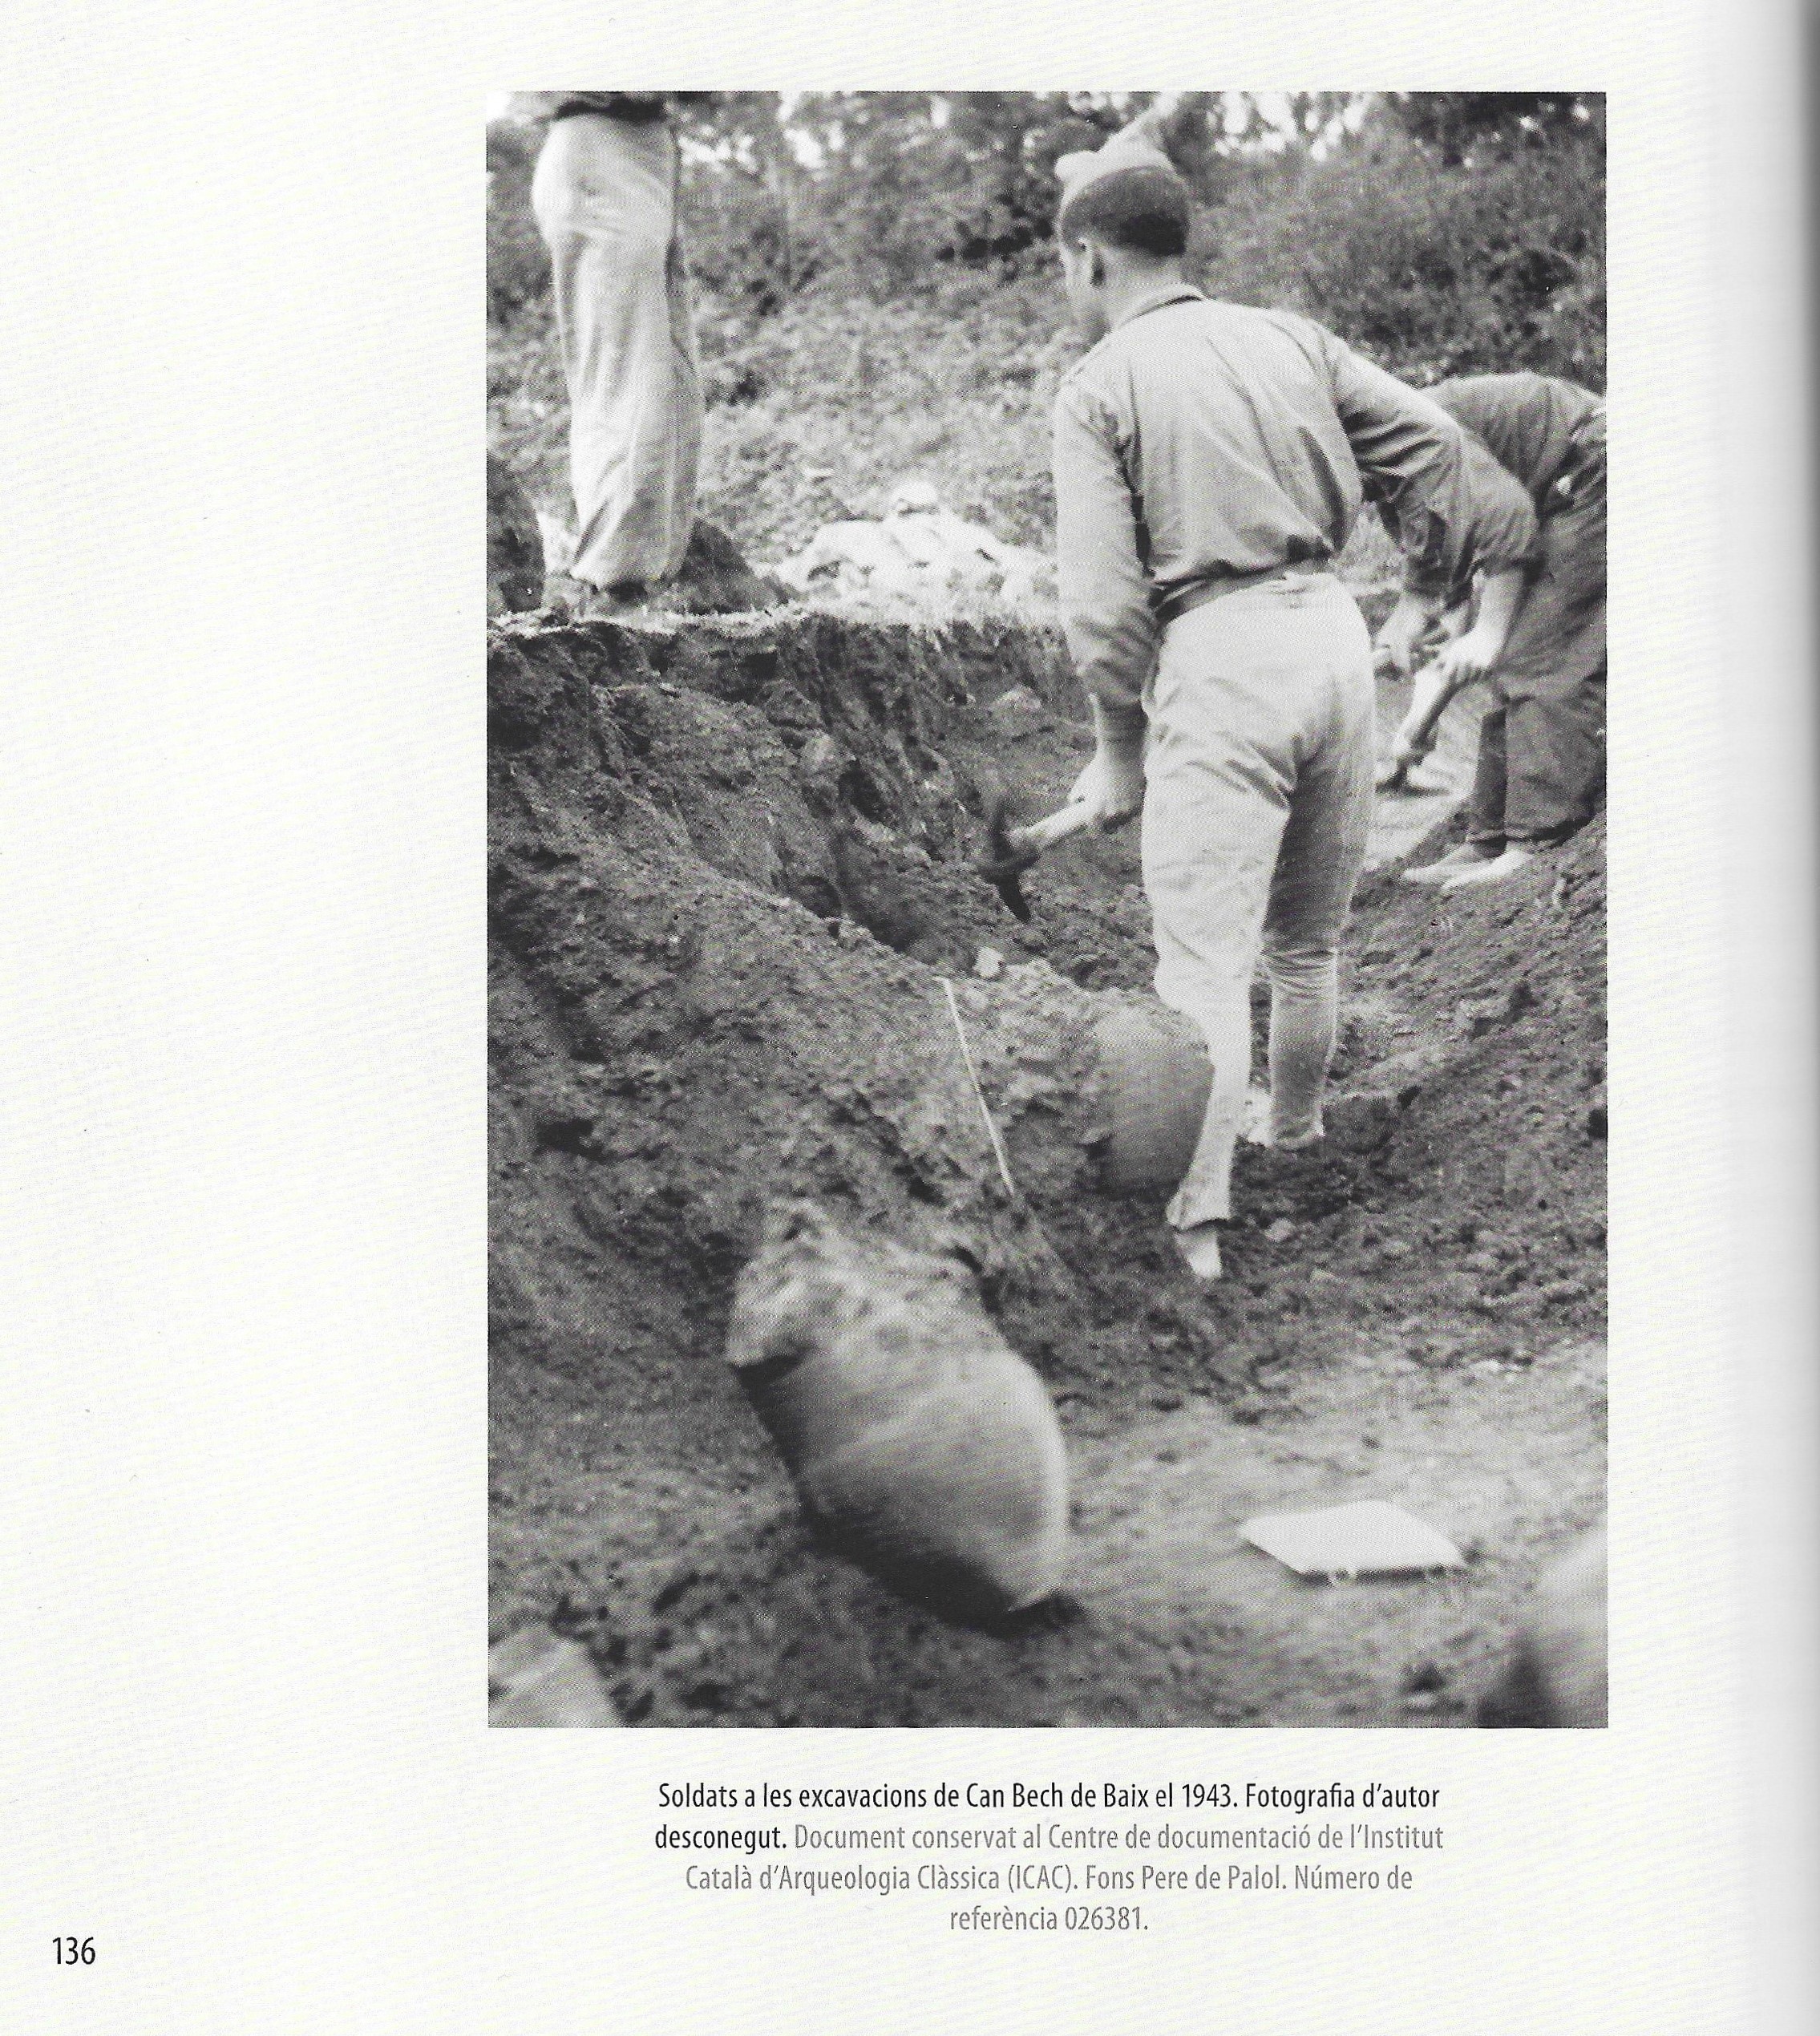 Soldats a les excavacions de Can Bech el 1943